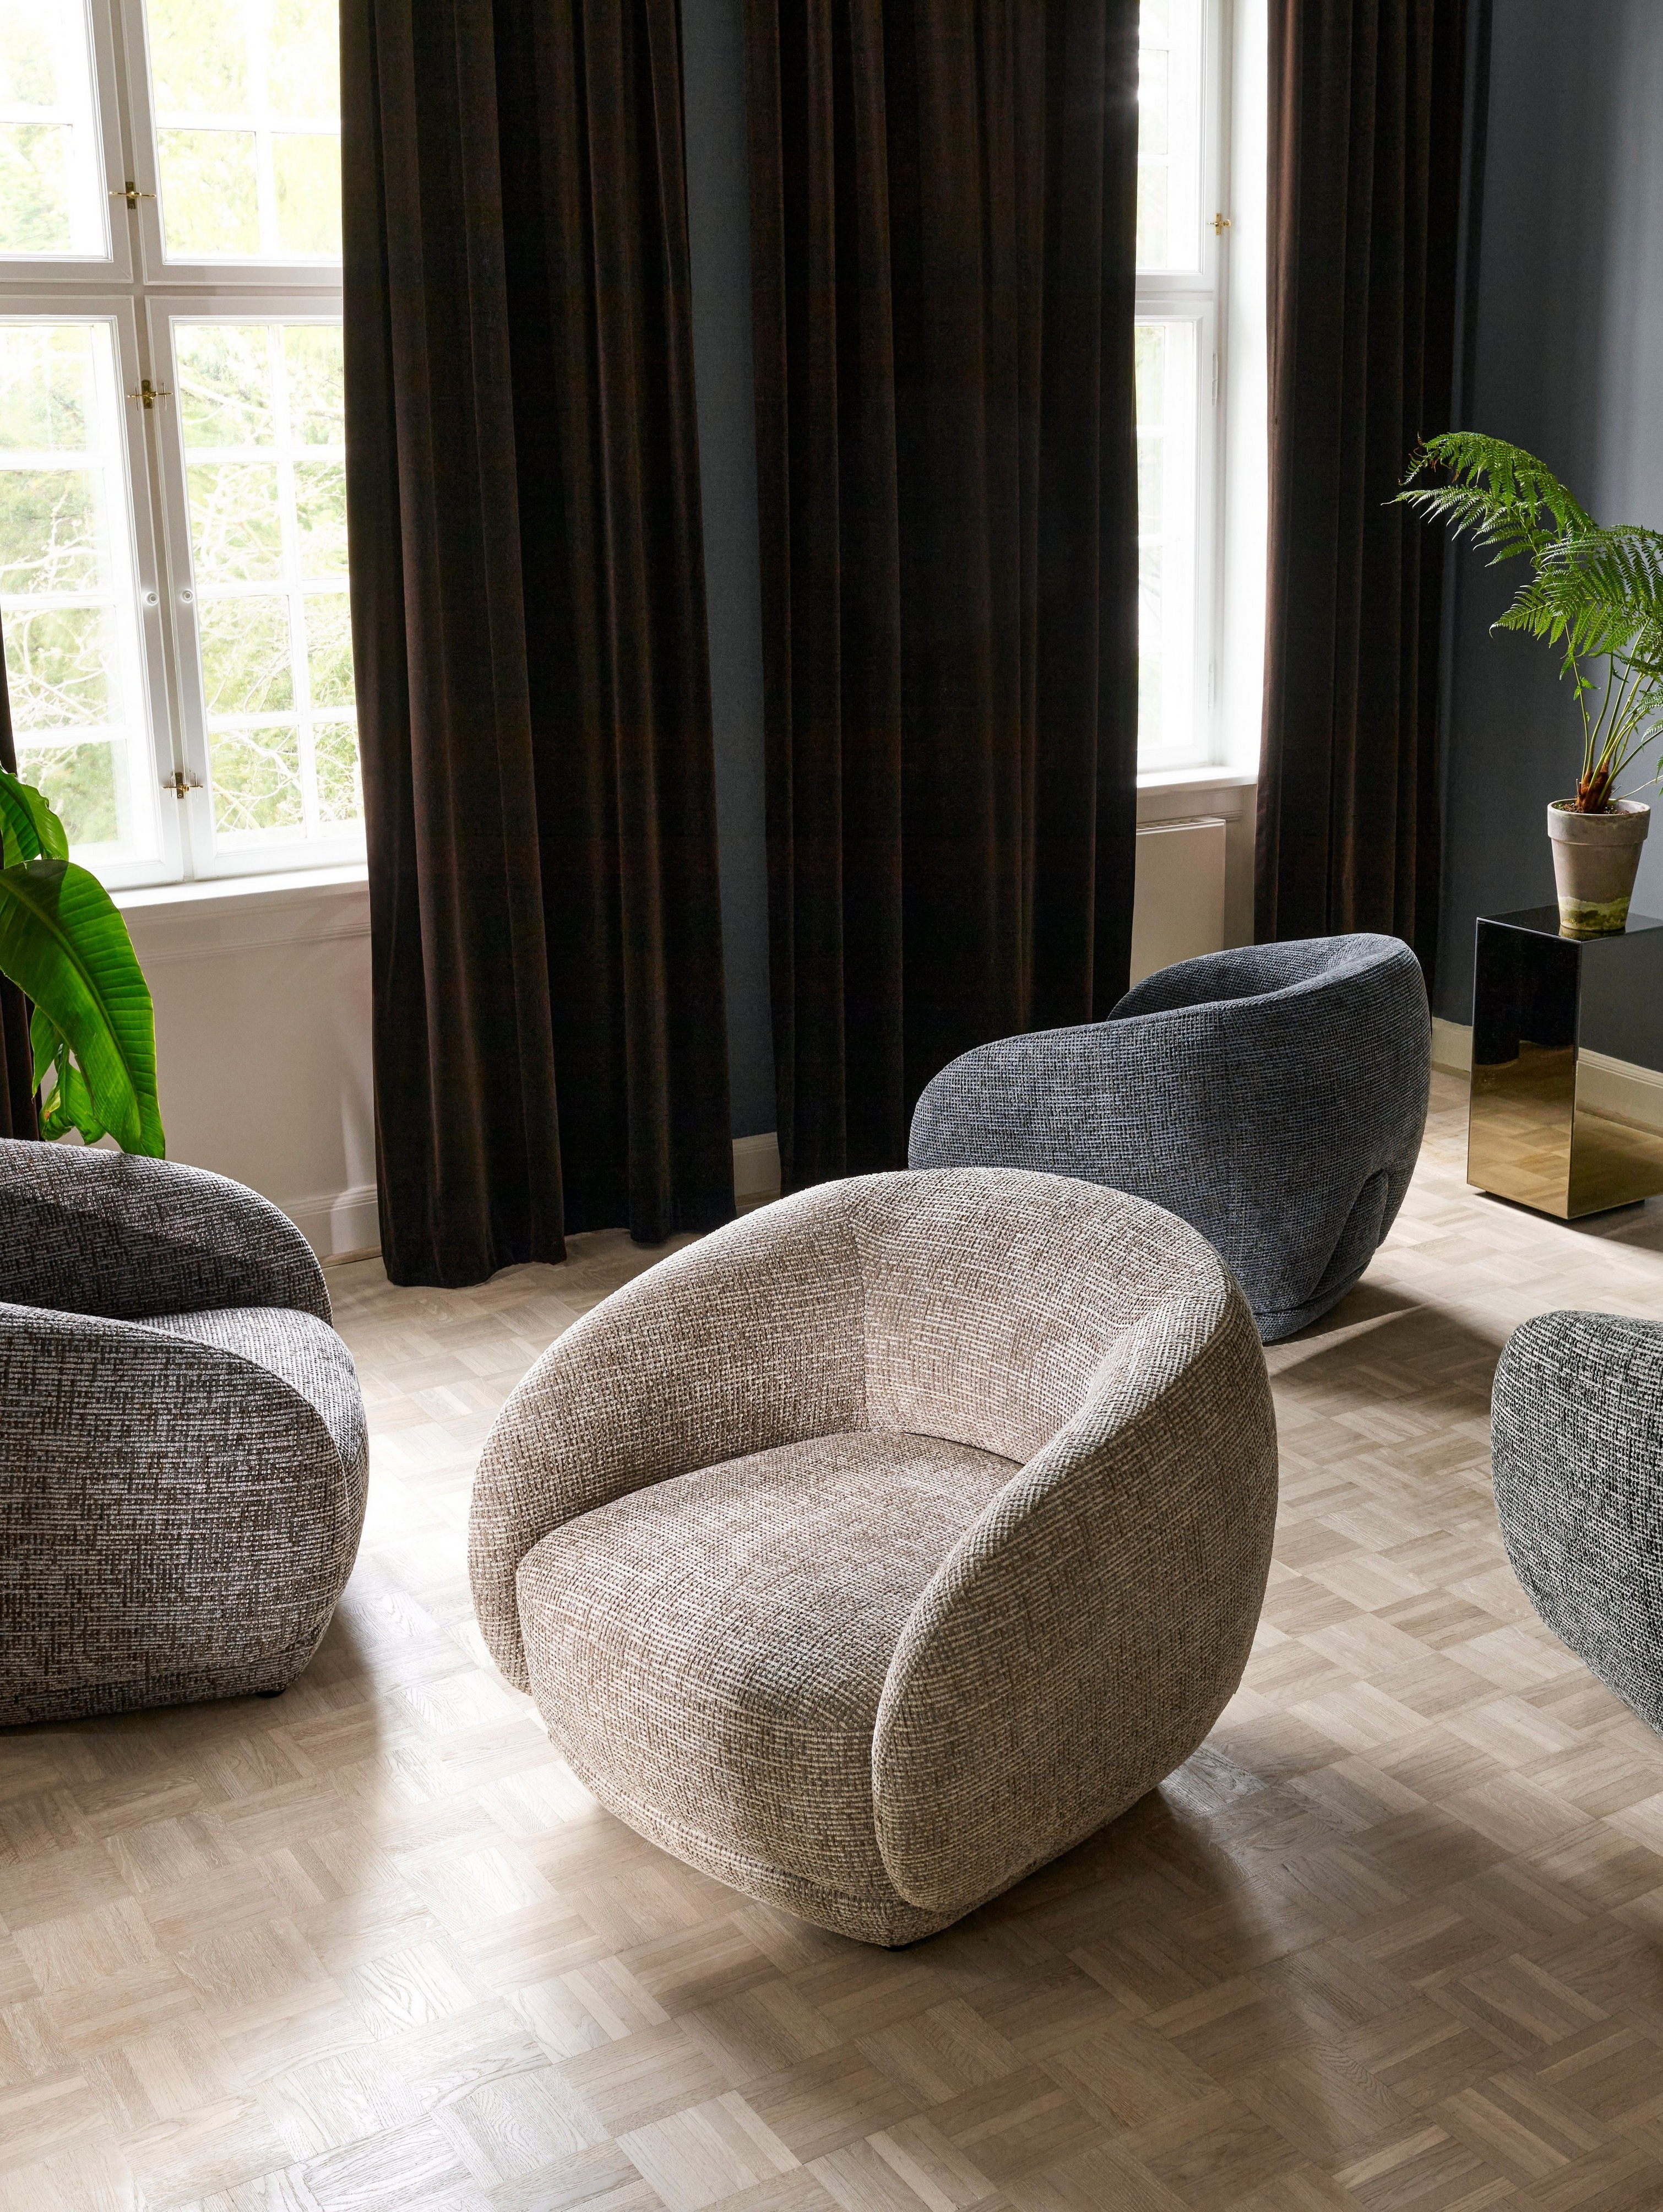 Vier Bolzano stoelen in een woonkamer geplaatst op willekeurige plekken.